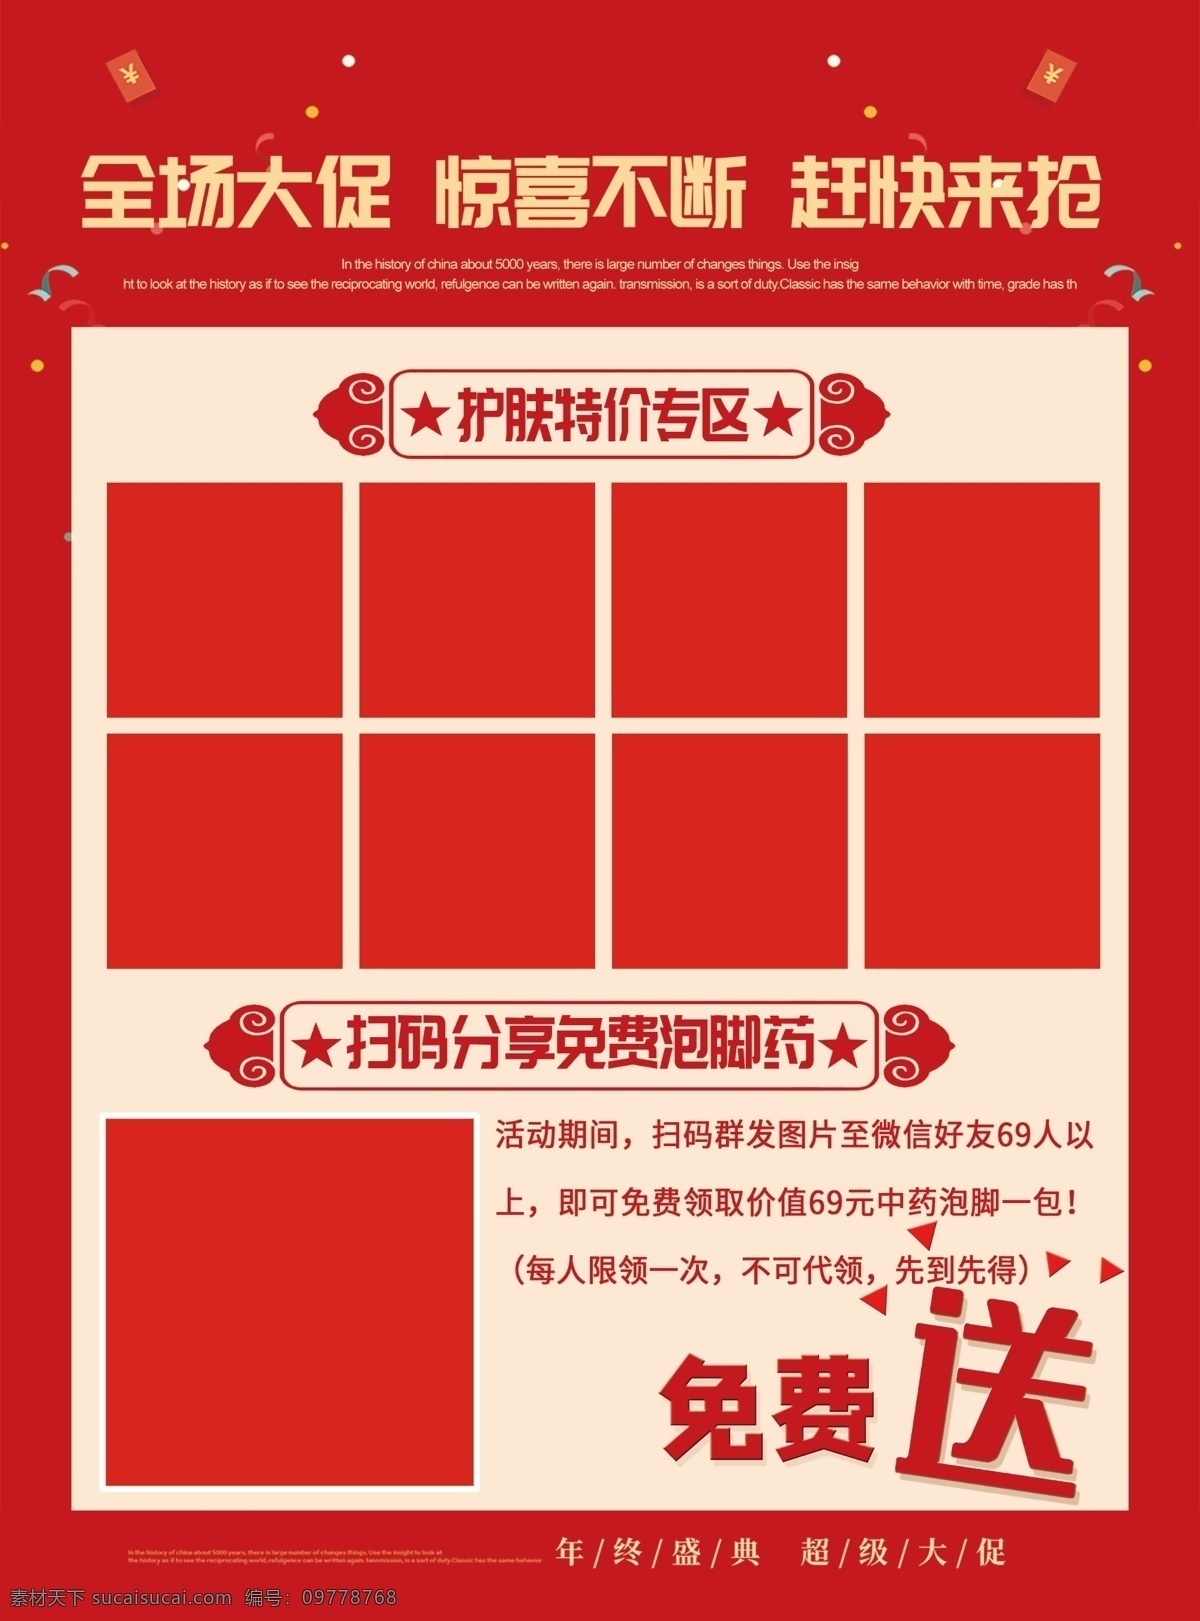 周年庆 全城钜惠 促销宣传 促销宣传单 红色宣传单 活动宣传单 宣传单 dm宣传单